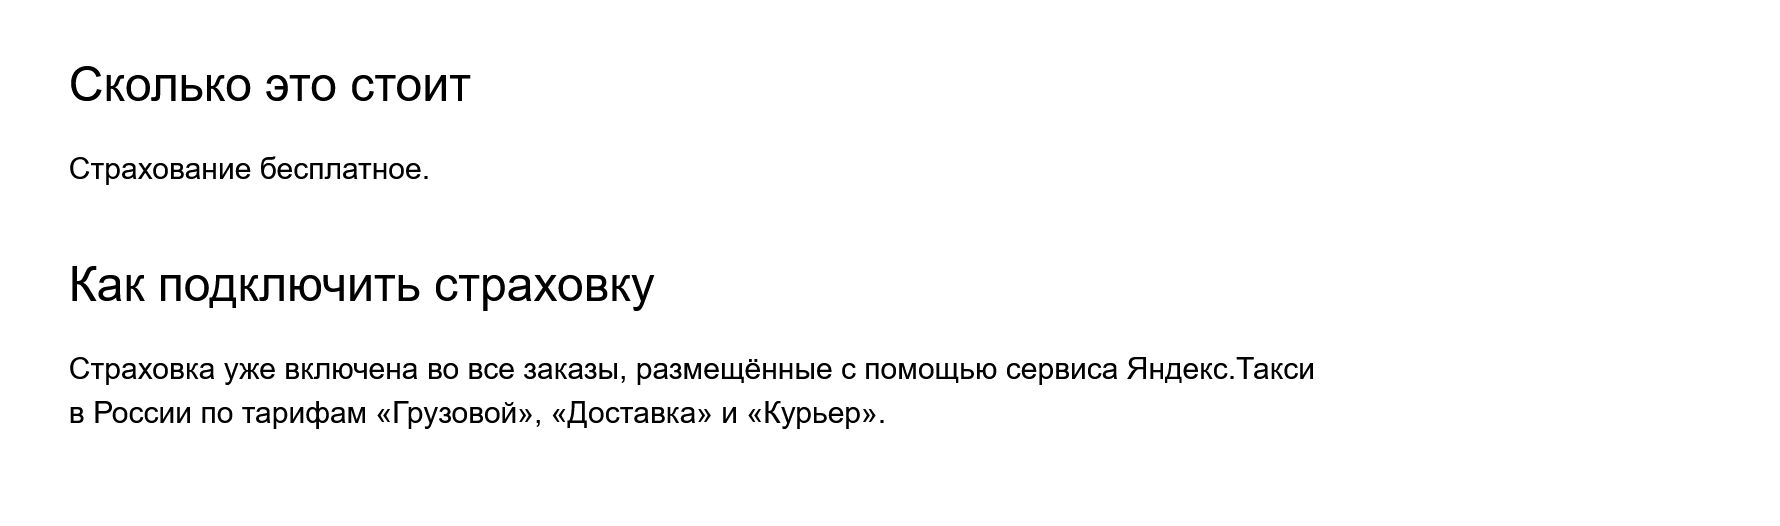 У «Яндекса» страховка бесплатная и входит в сервис